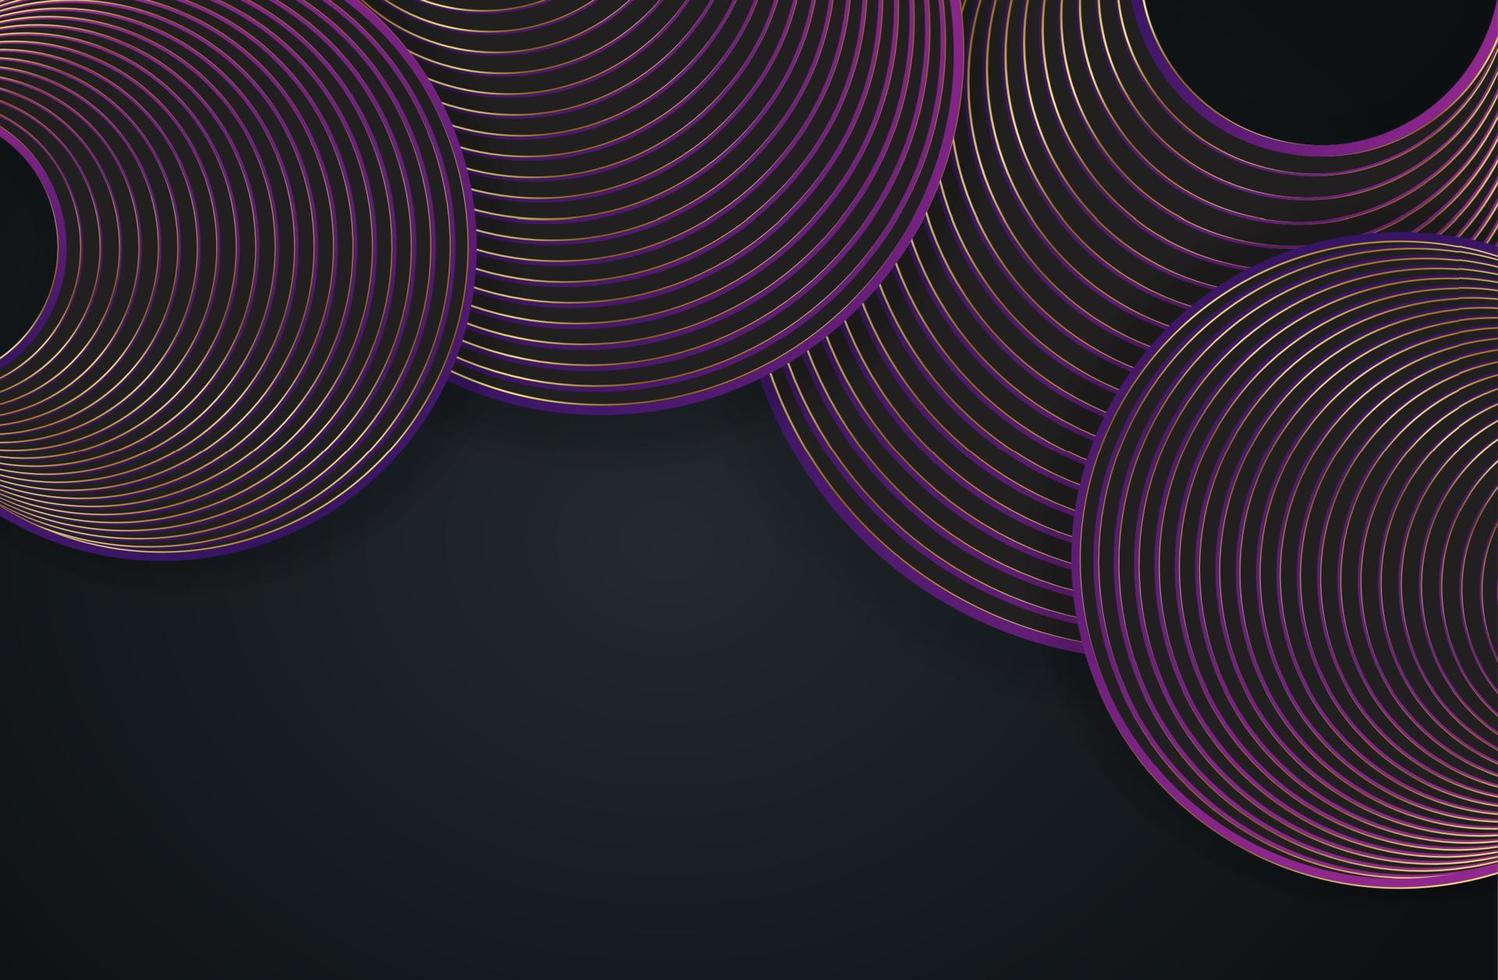 círculos de ouro e roxos de moda abstrata, linhas redondas curvas em fundo preto com efeito de iluminação e brilho com espaço de cópia para texto. estilo de design de luxo. ilustração vetorial, modelo de banner vetor